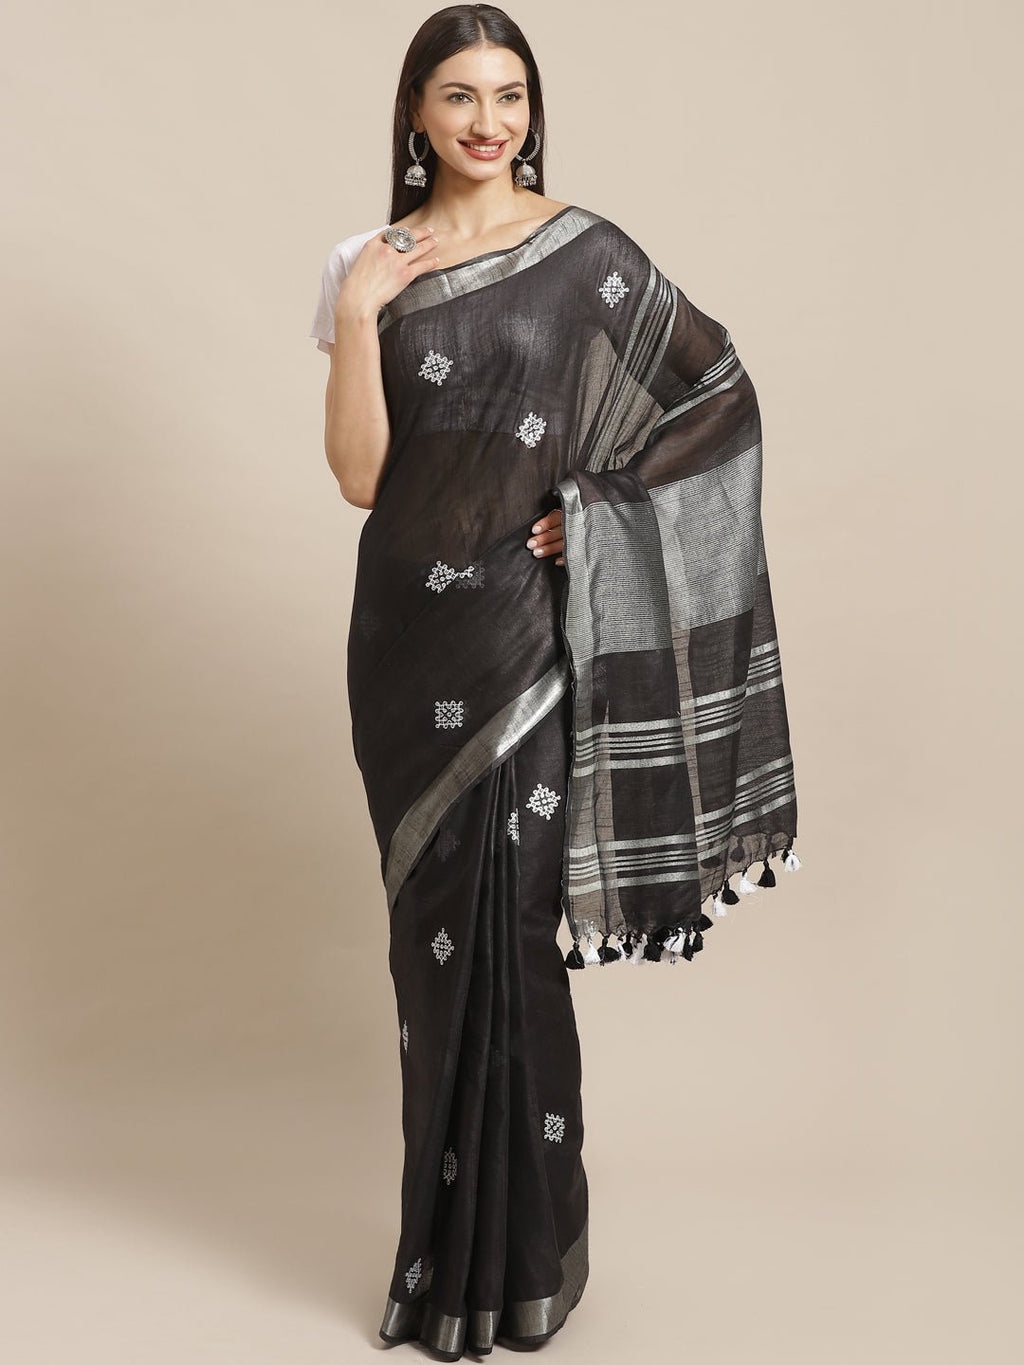 Black and Silver, Kalakari India Linen Woven Saree and Blouse ALBGSA0066 - Kalakari India